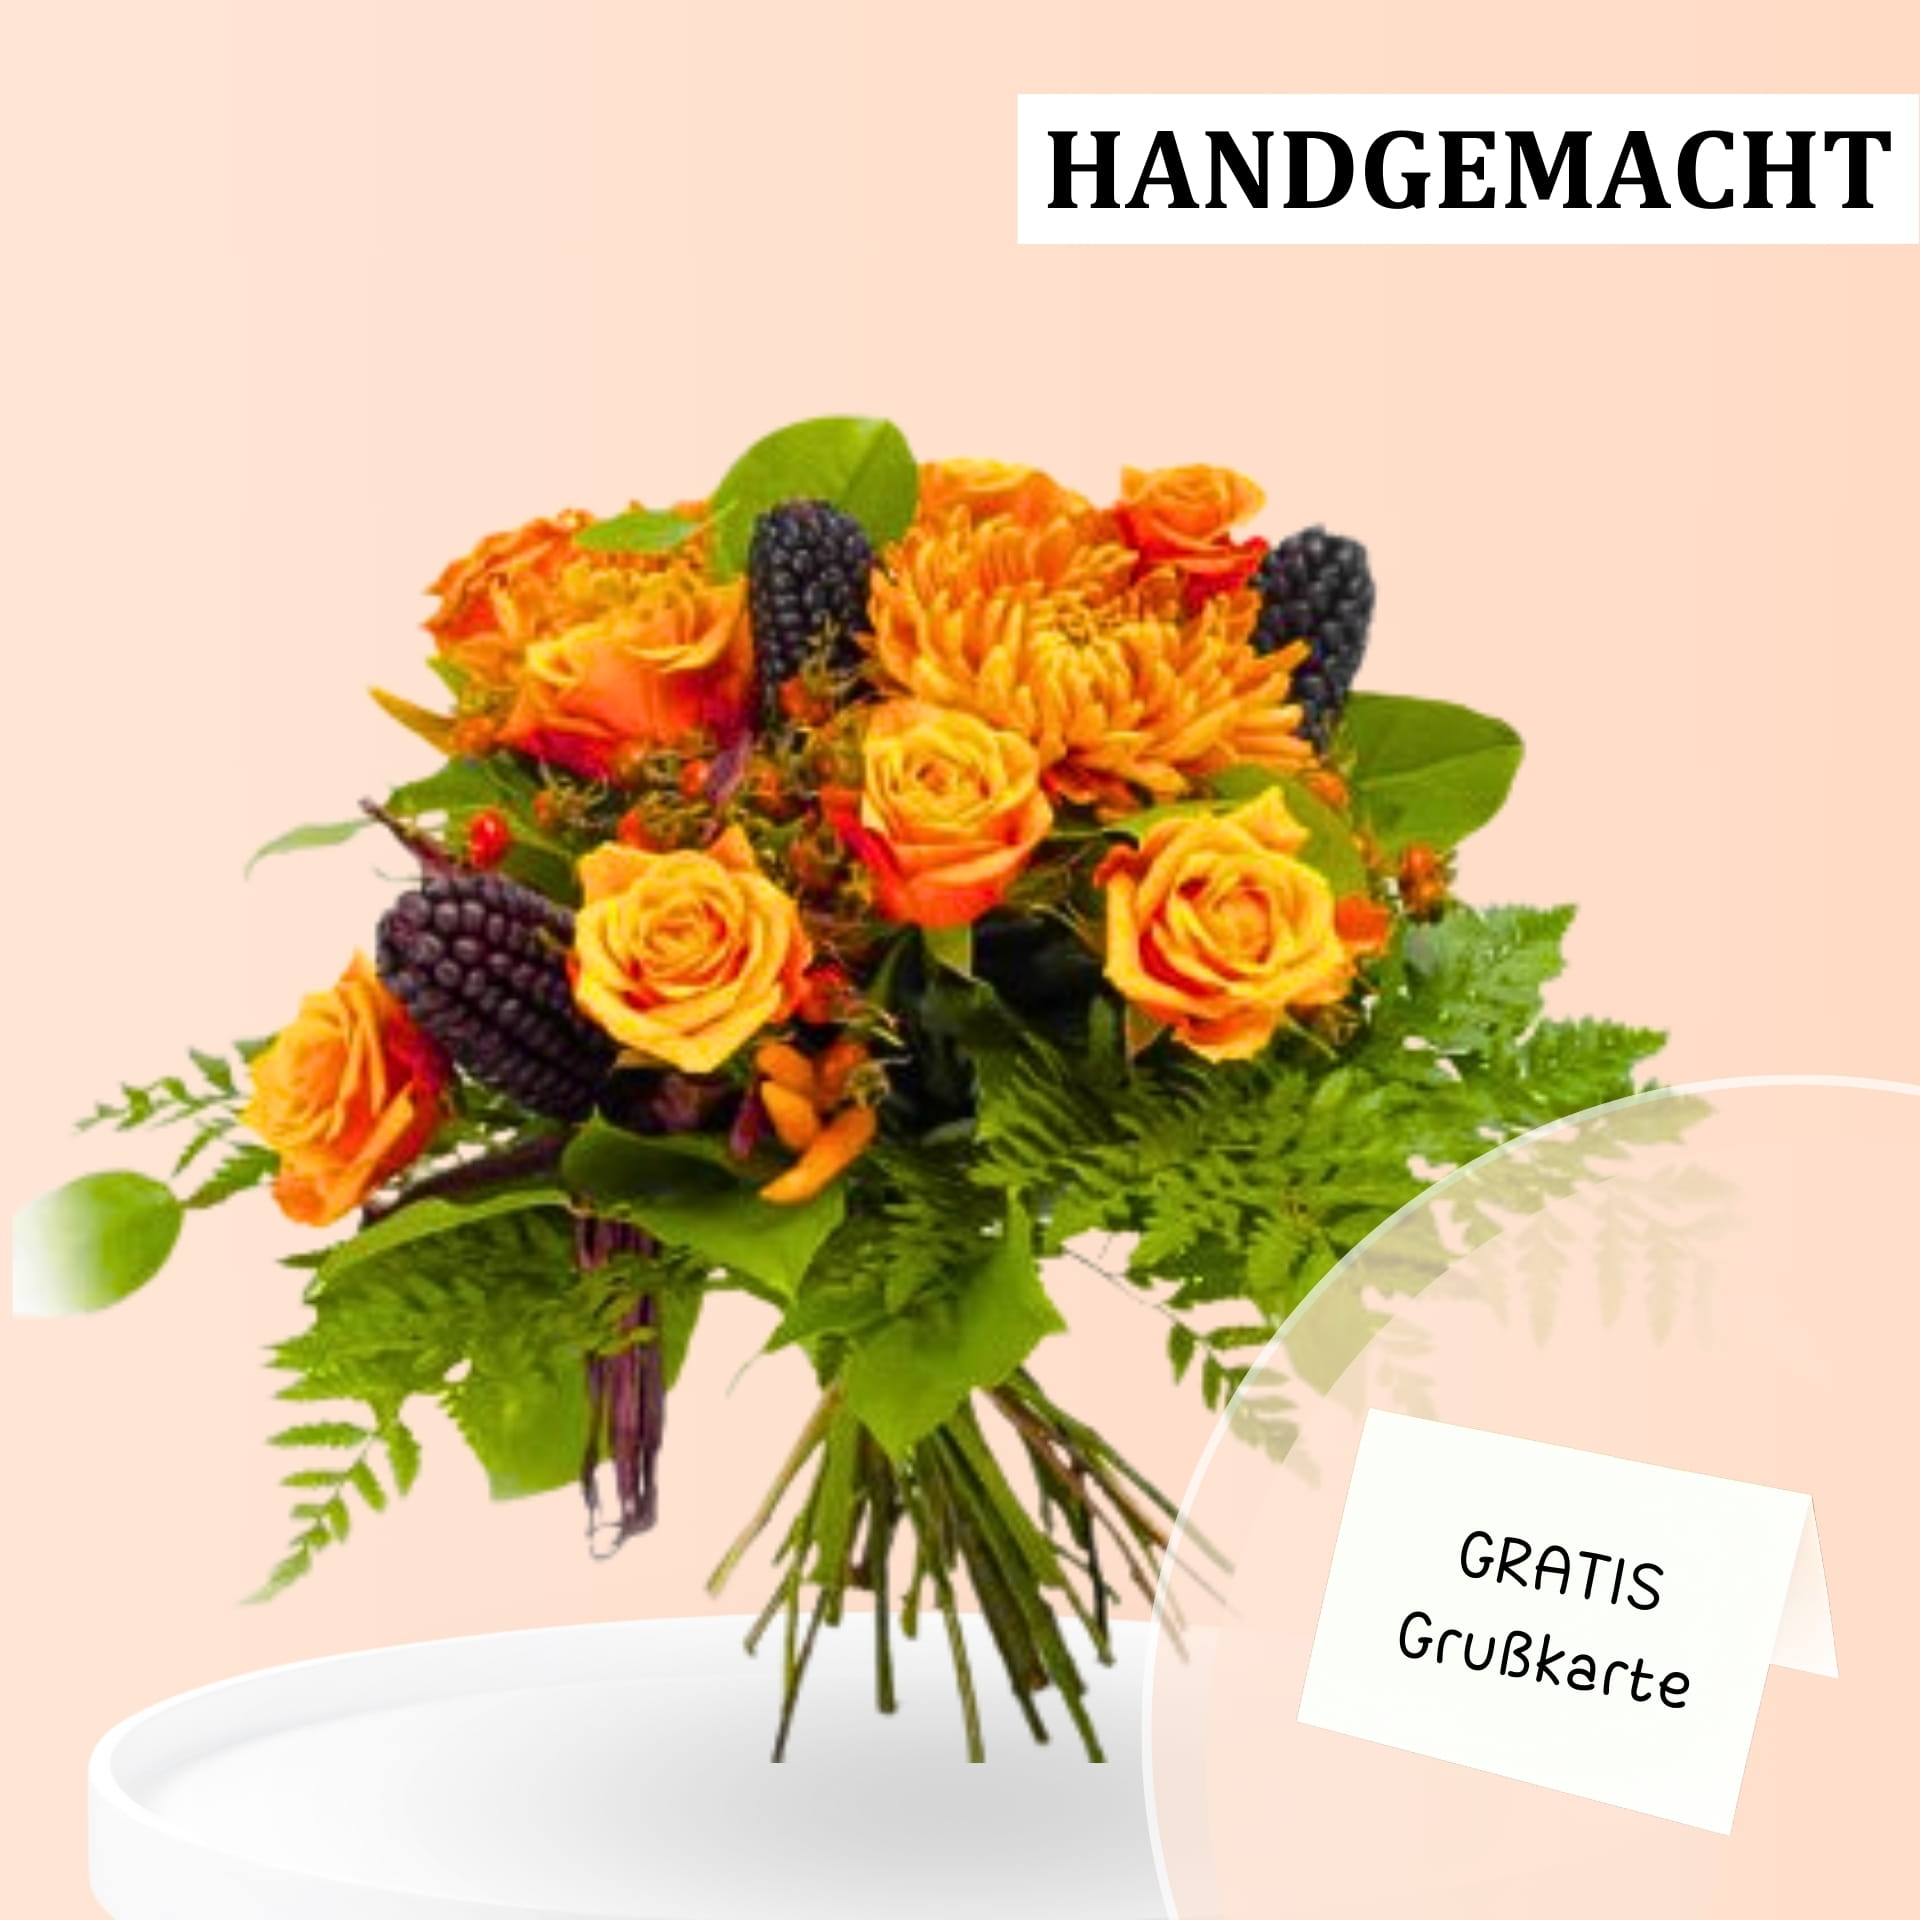 Herbstlicher Blumenstrauß aus orangefarbenen Rosen und dunklen Beeren, gebunden mit grünen Farnblättern. Text auf dem Bild: "HANDGEMACHT" und "GRATIS Grußkarte".